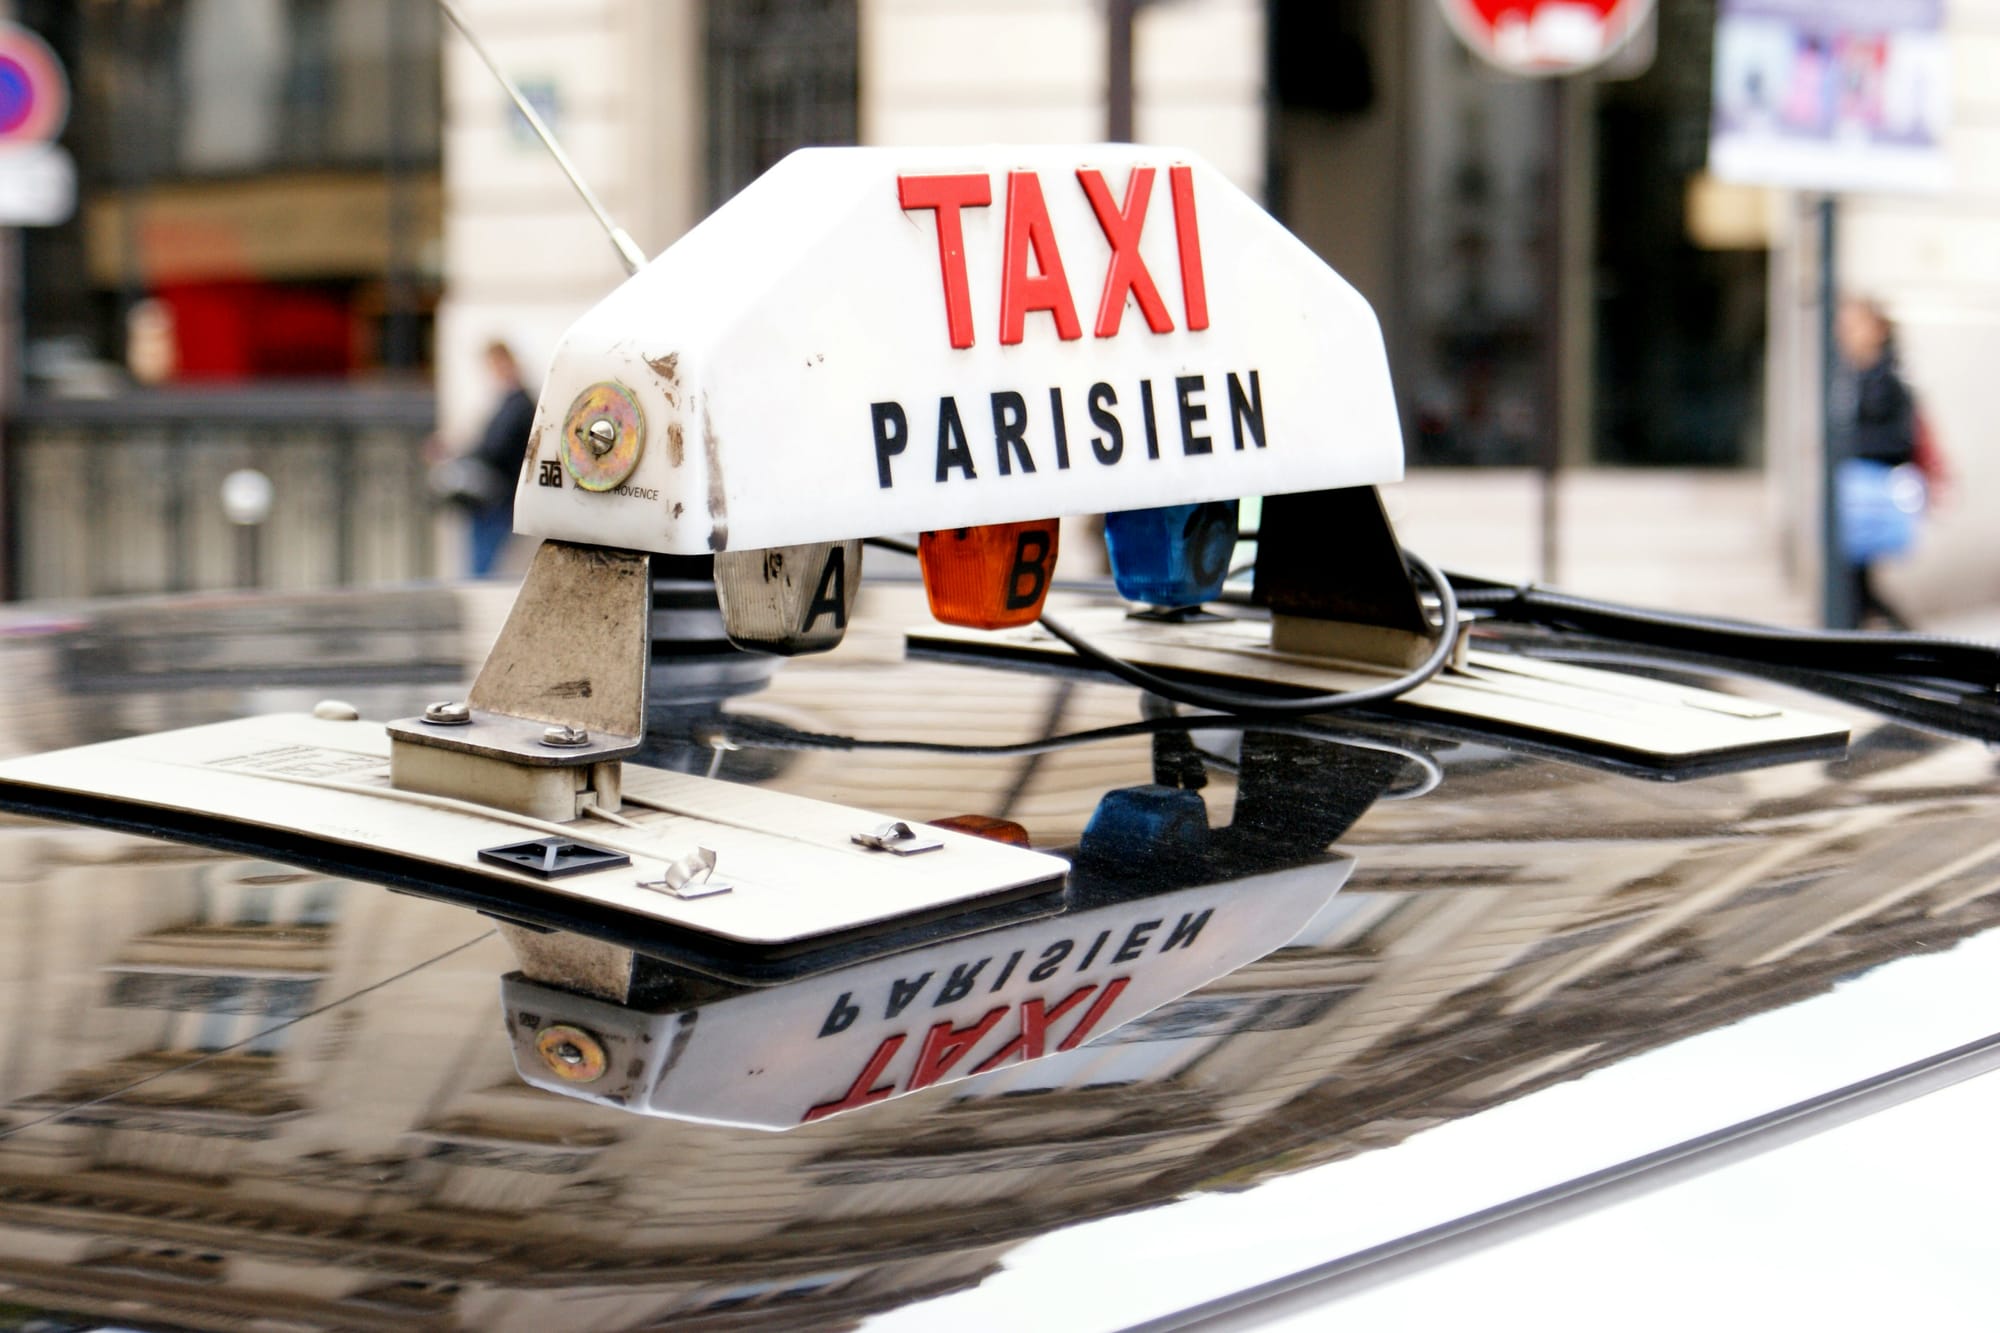 Parisien Taxi sign